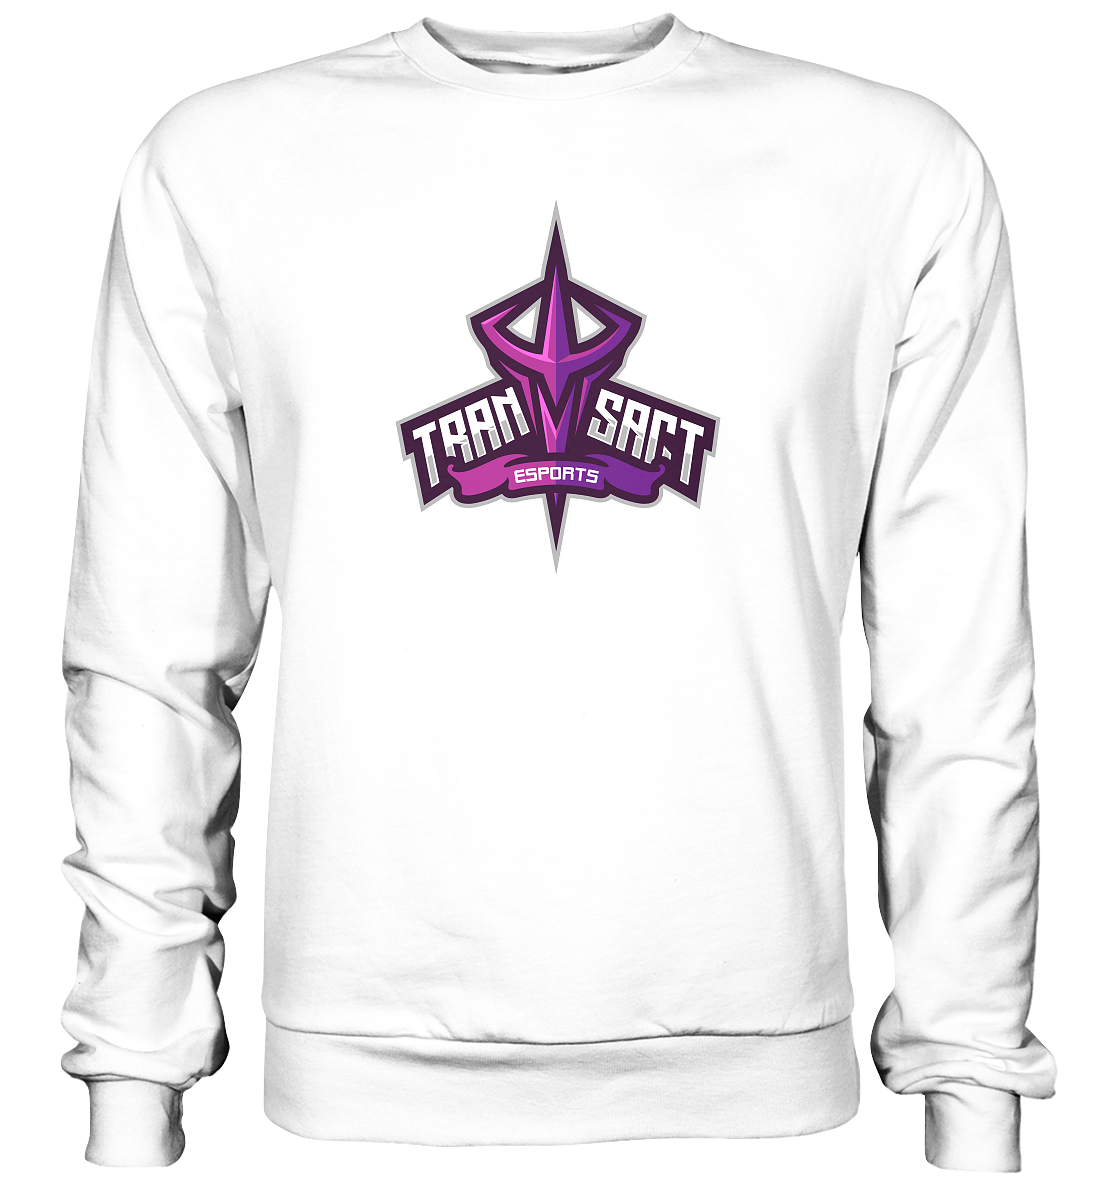 TRANSACT ESPORTS - Basic Sweatshirt